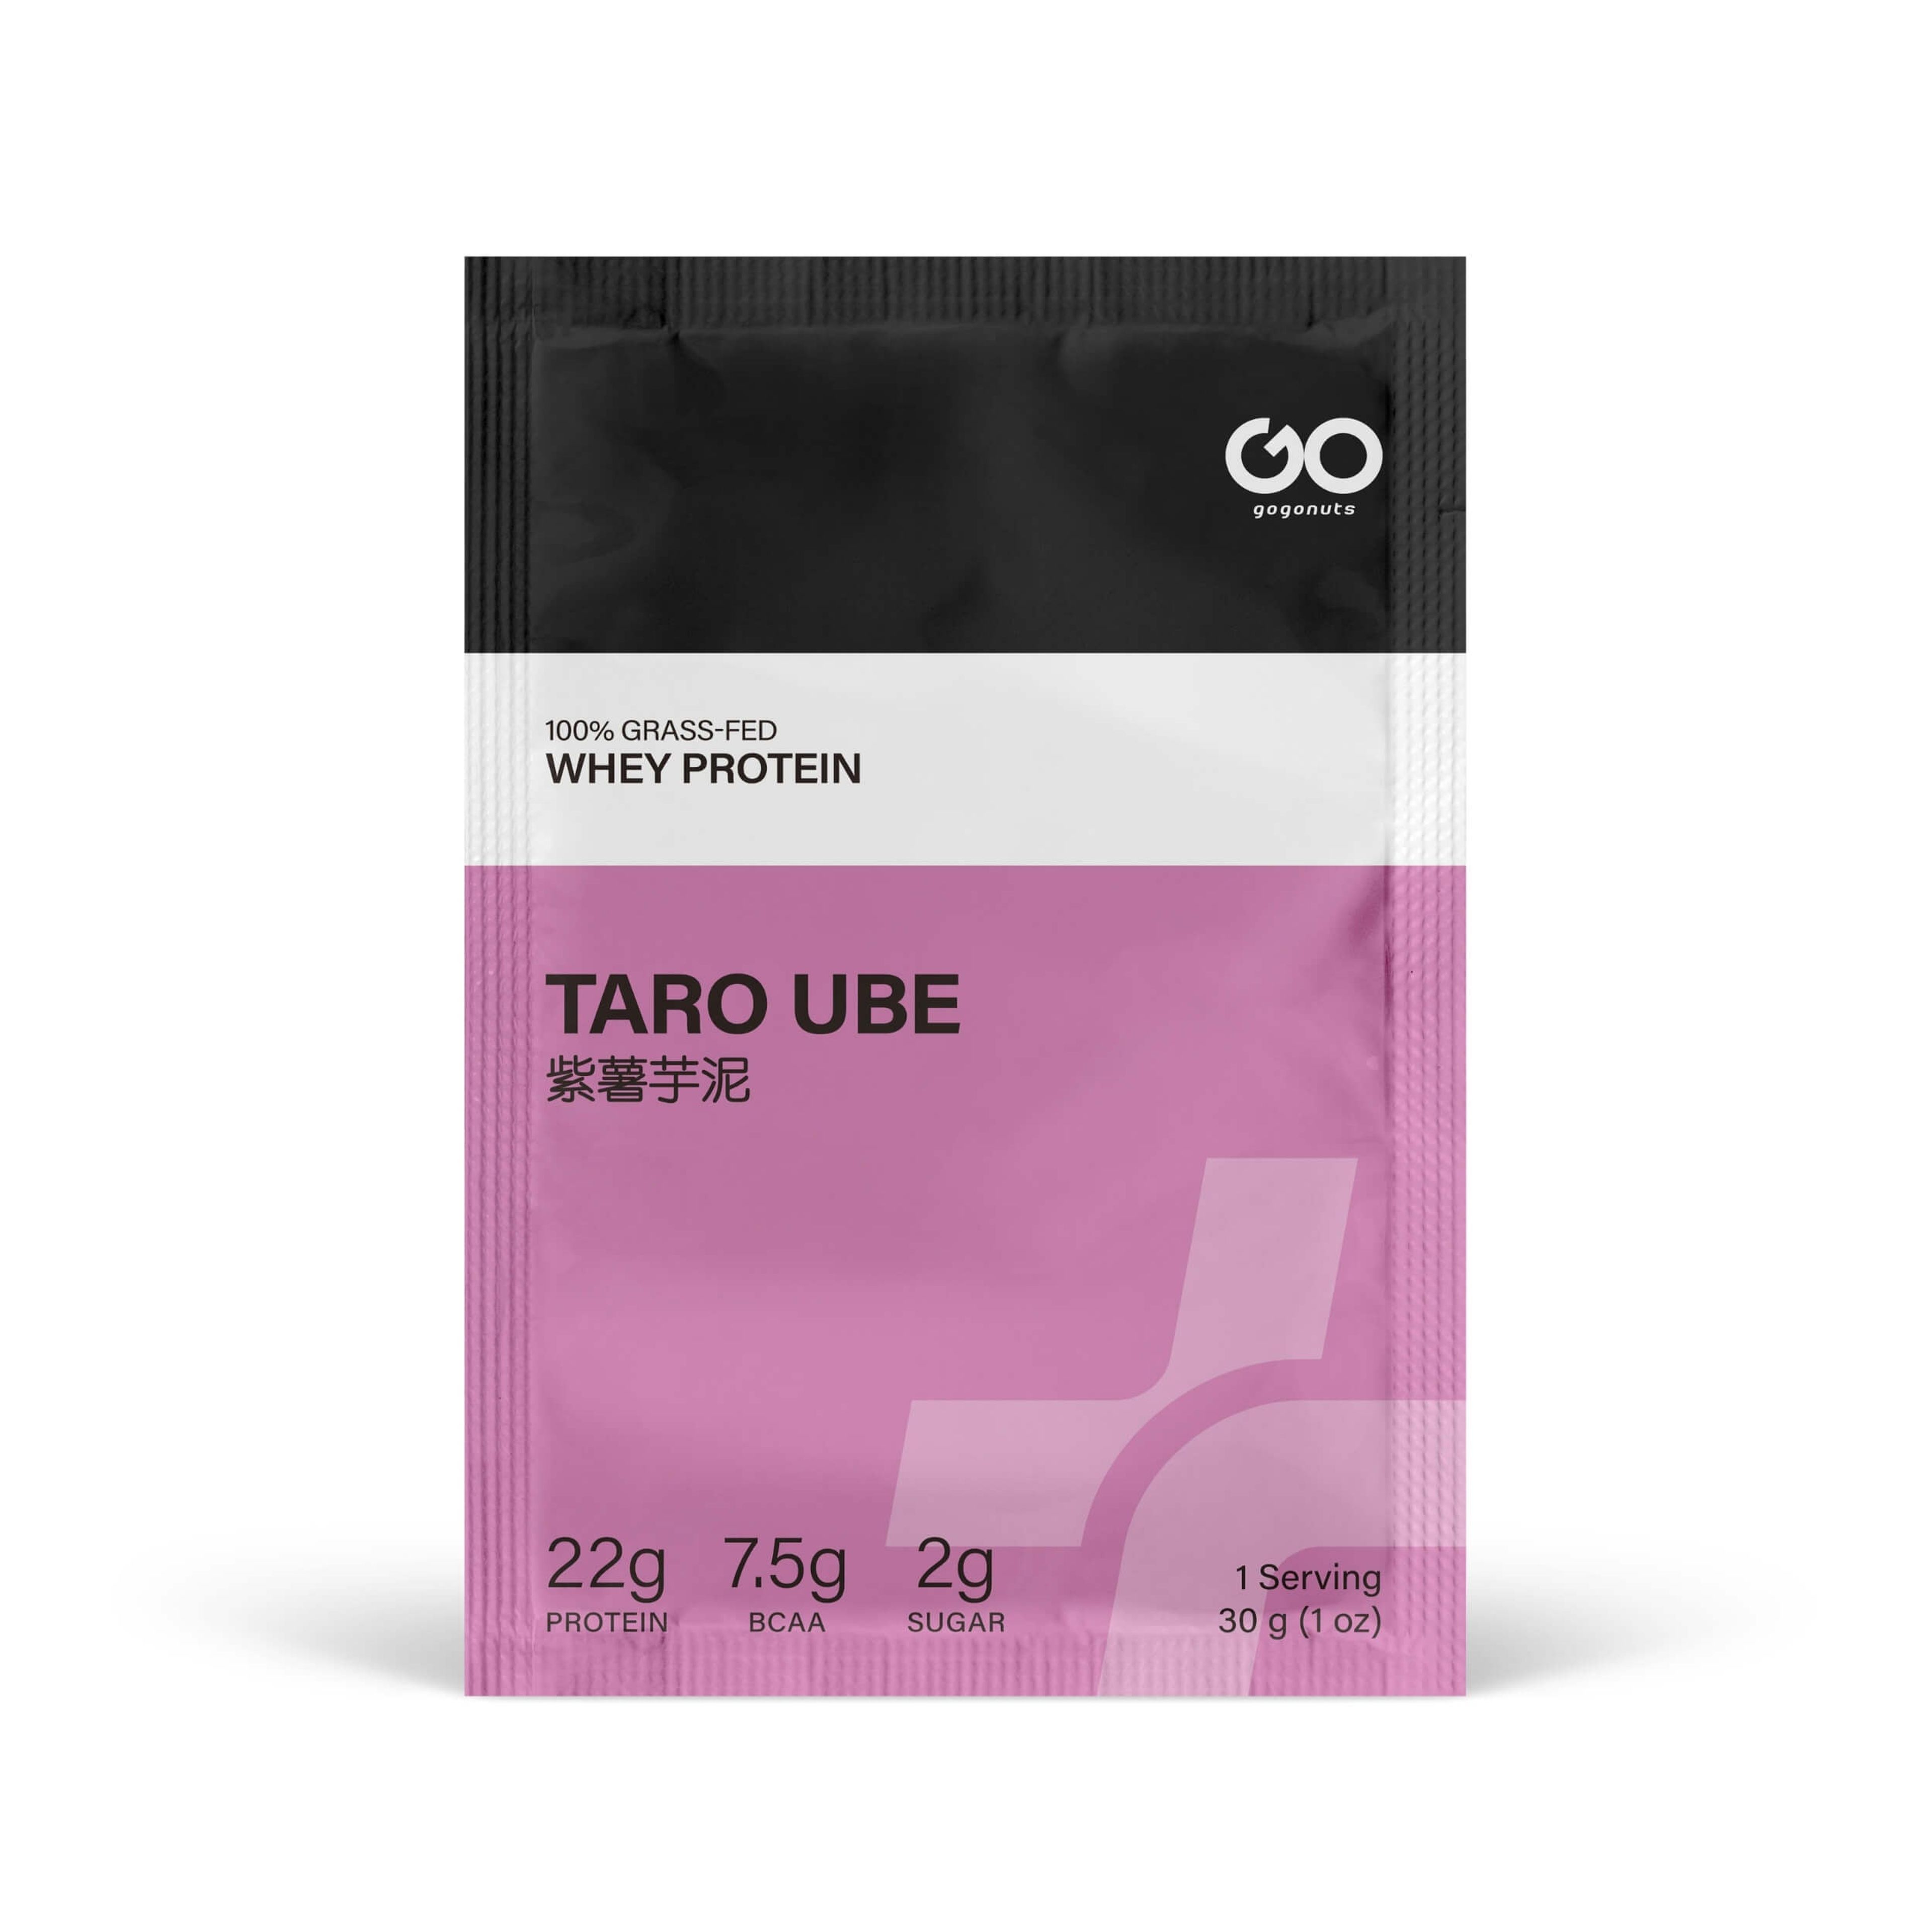 Taro Ube